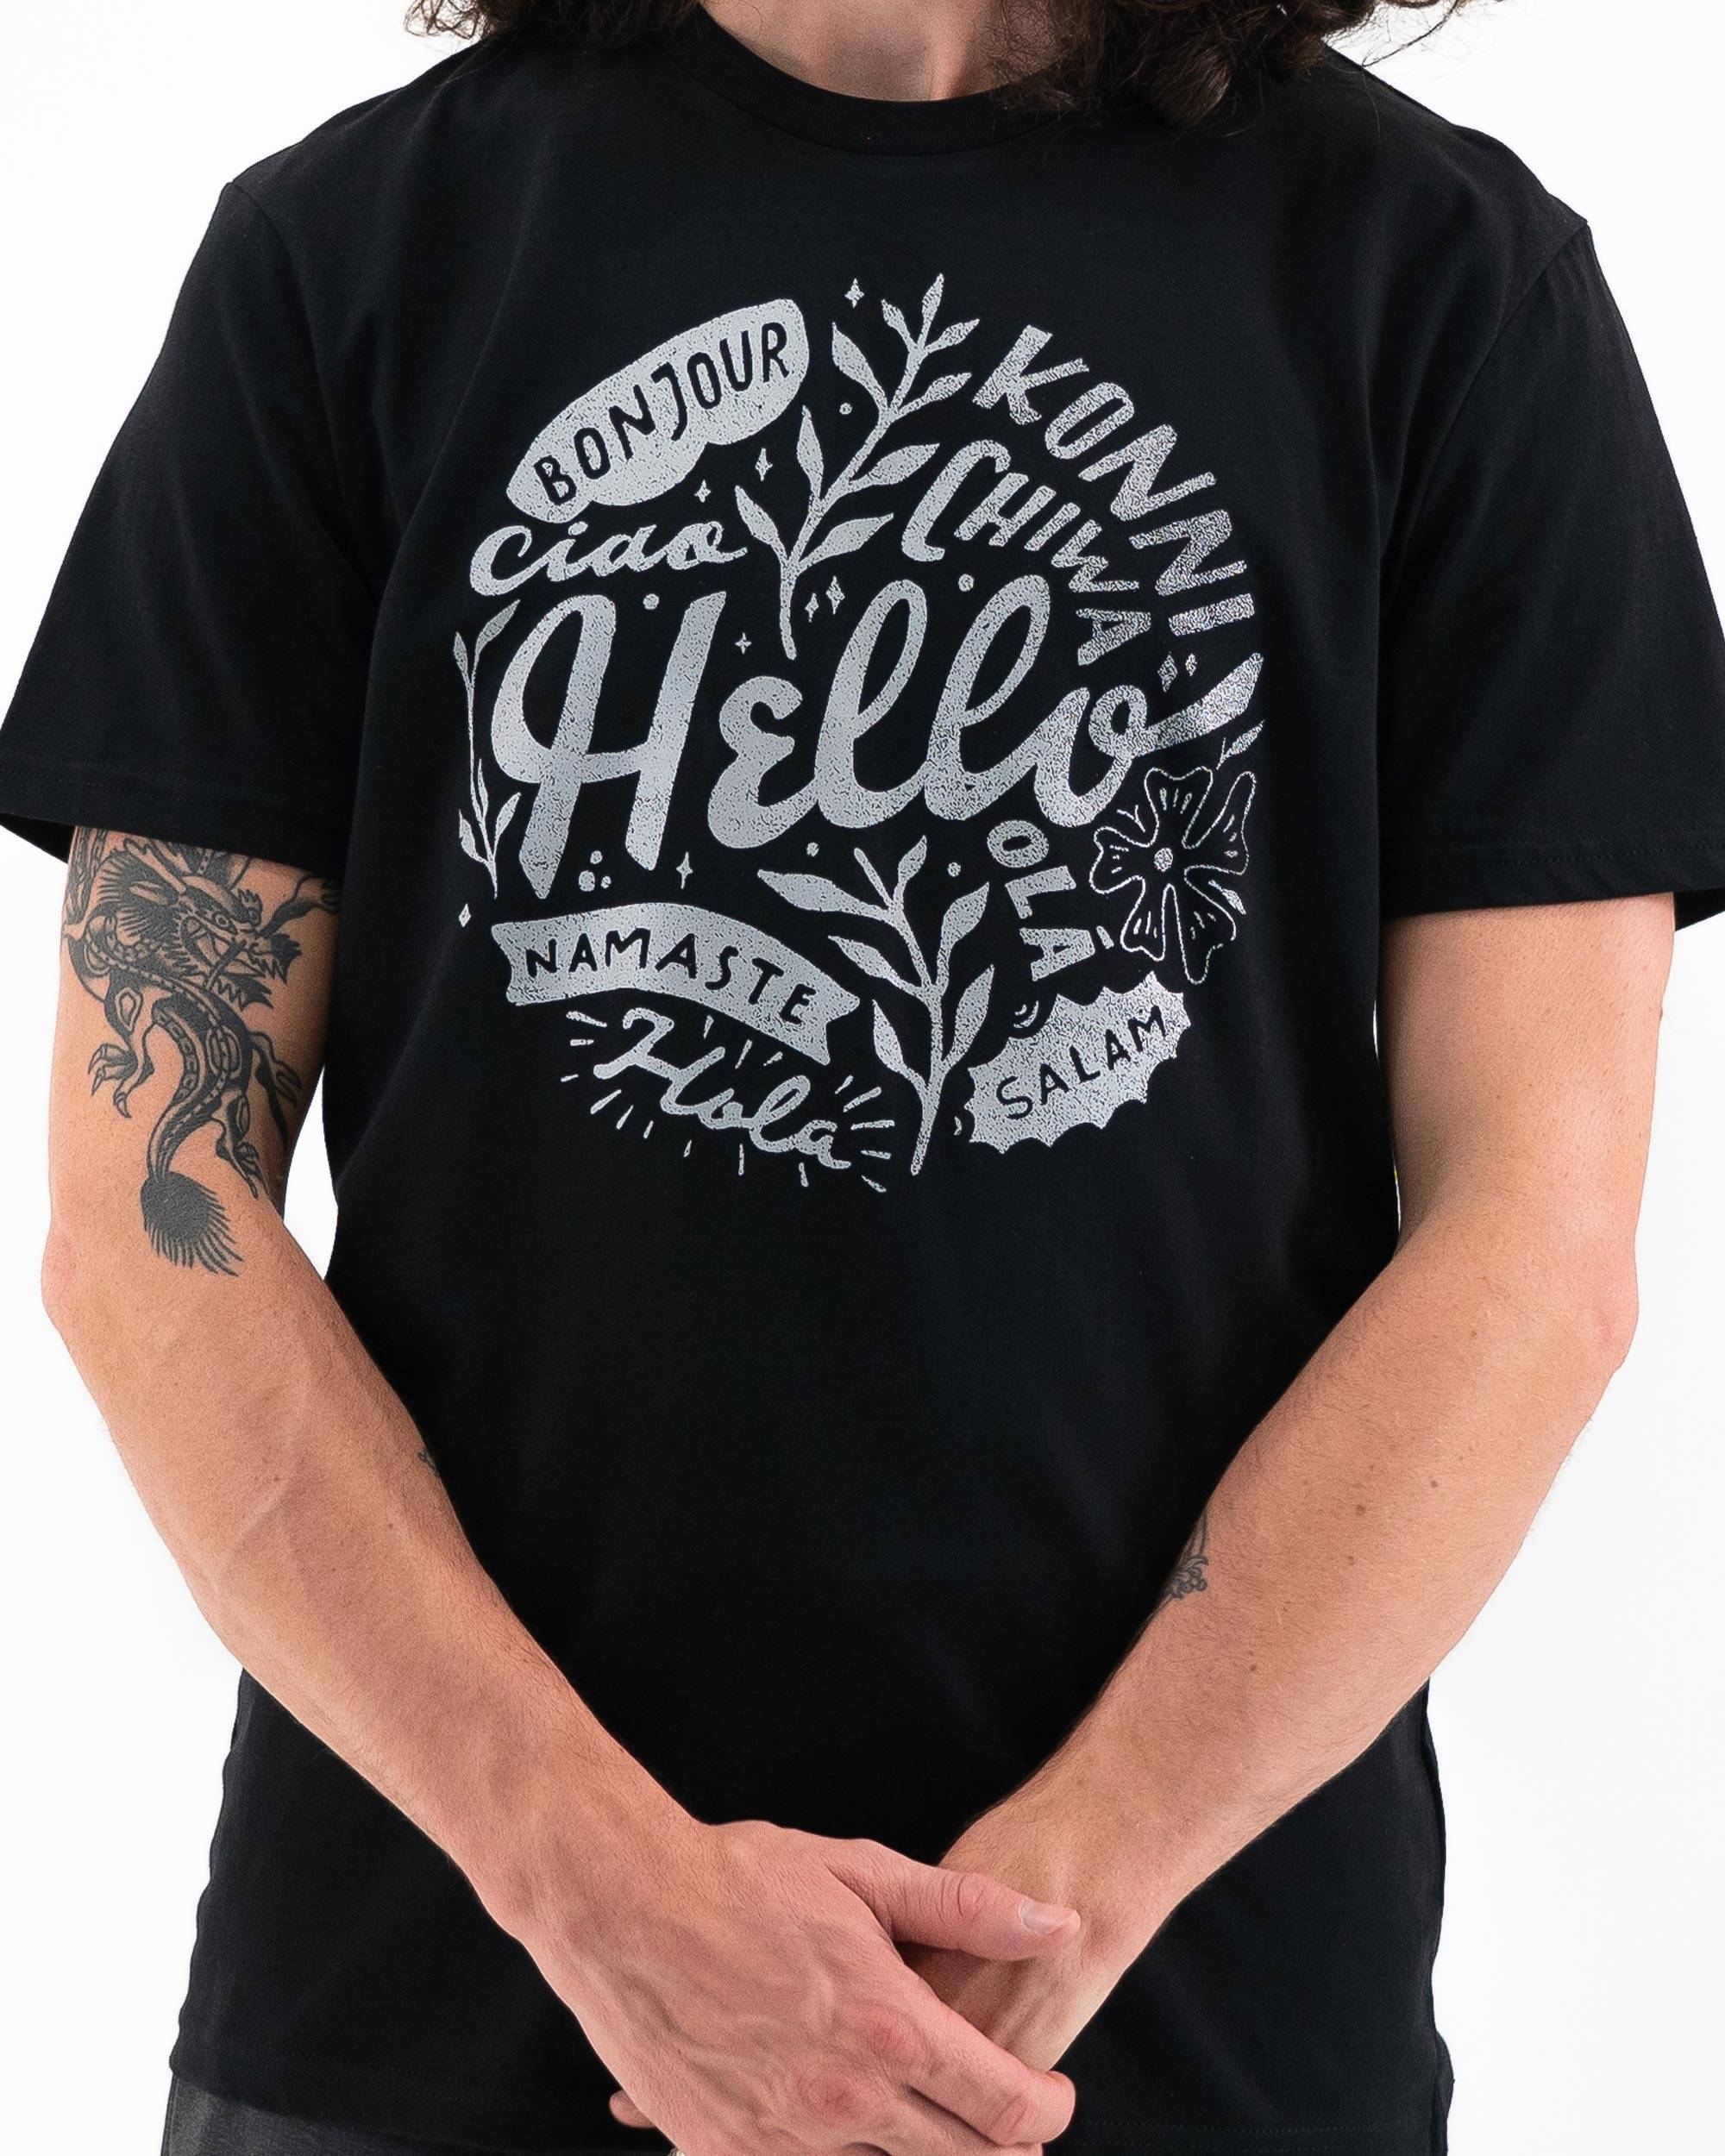 T-shirt Hello de couleur Noir par Skitchism